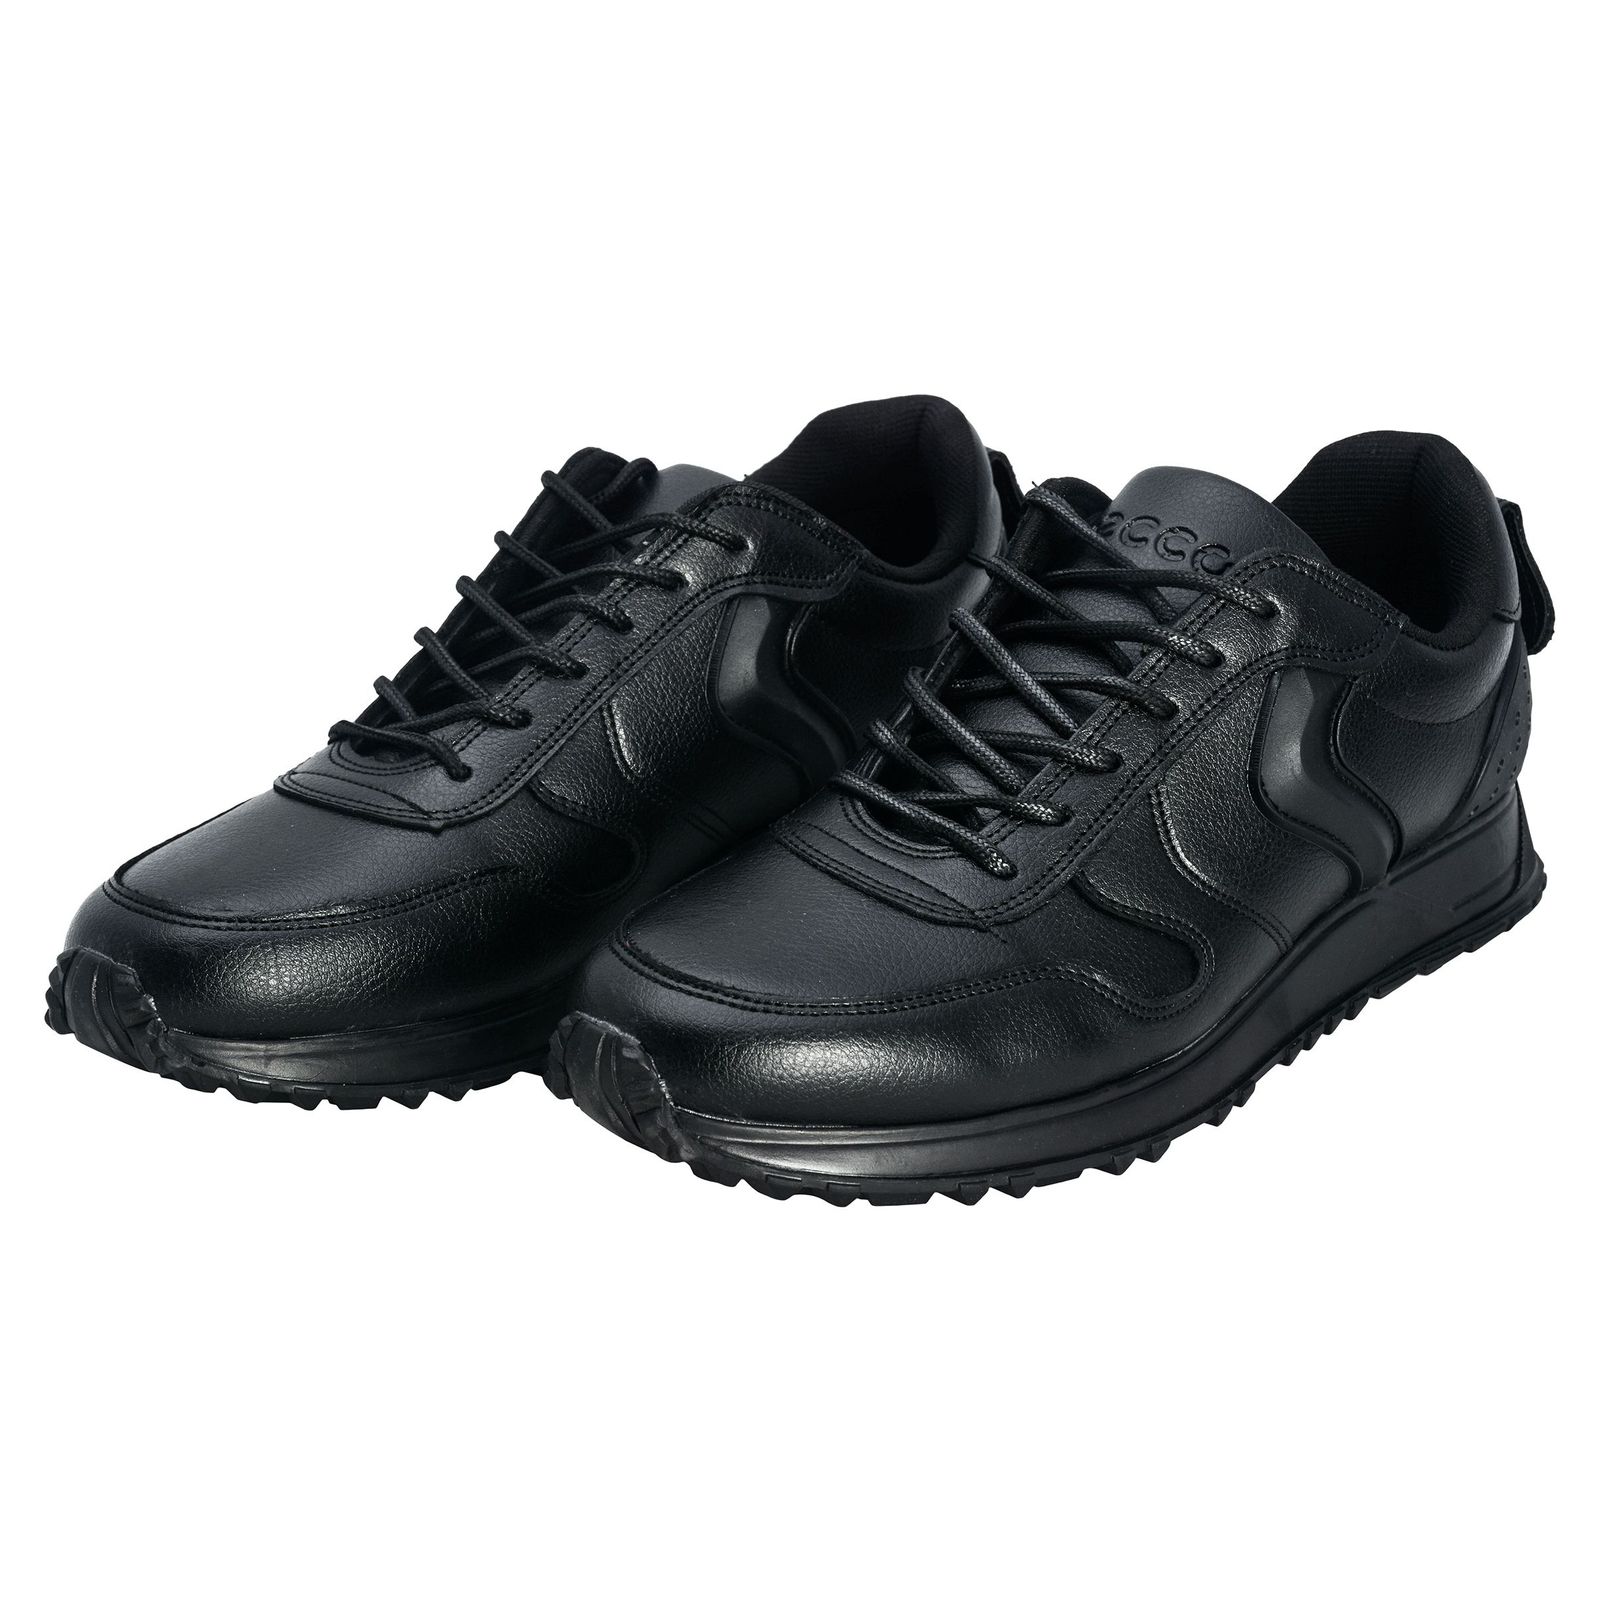 کفش مخصوص پیاده روی مردانهکد 1053